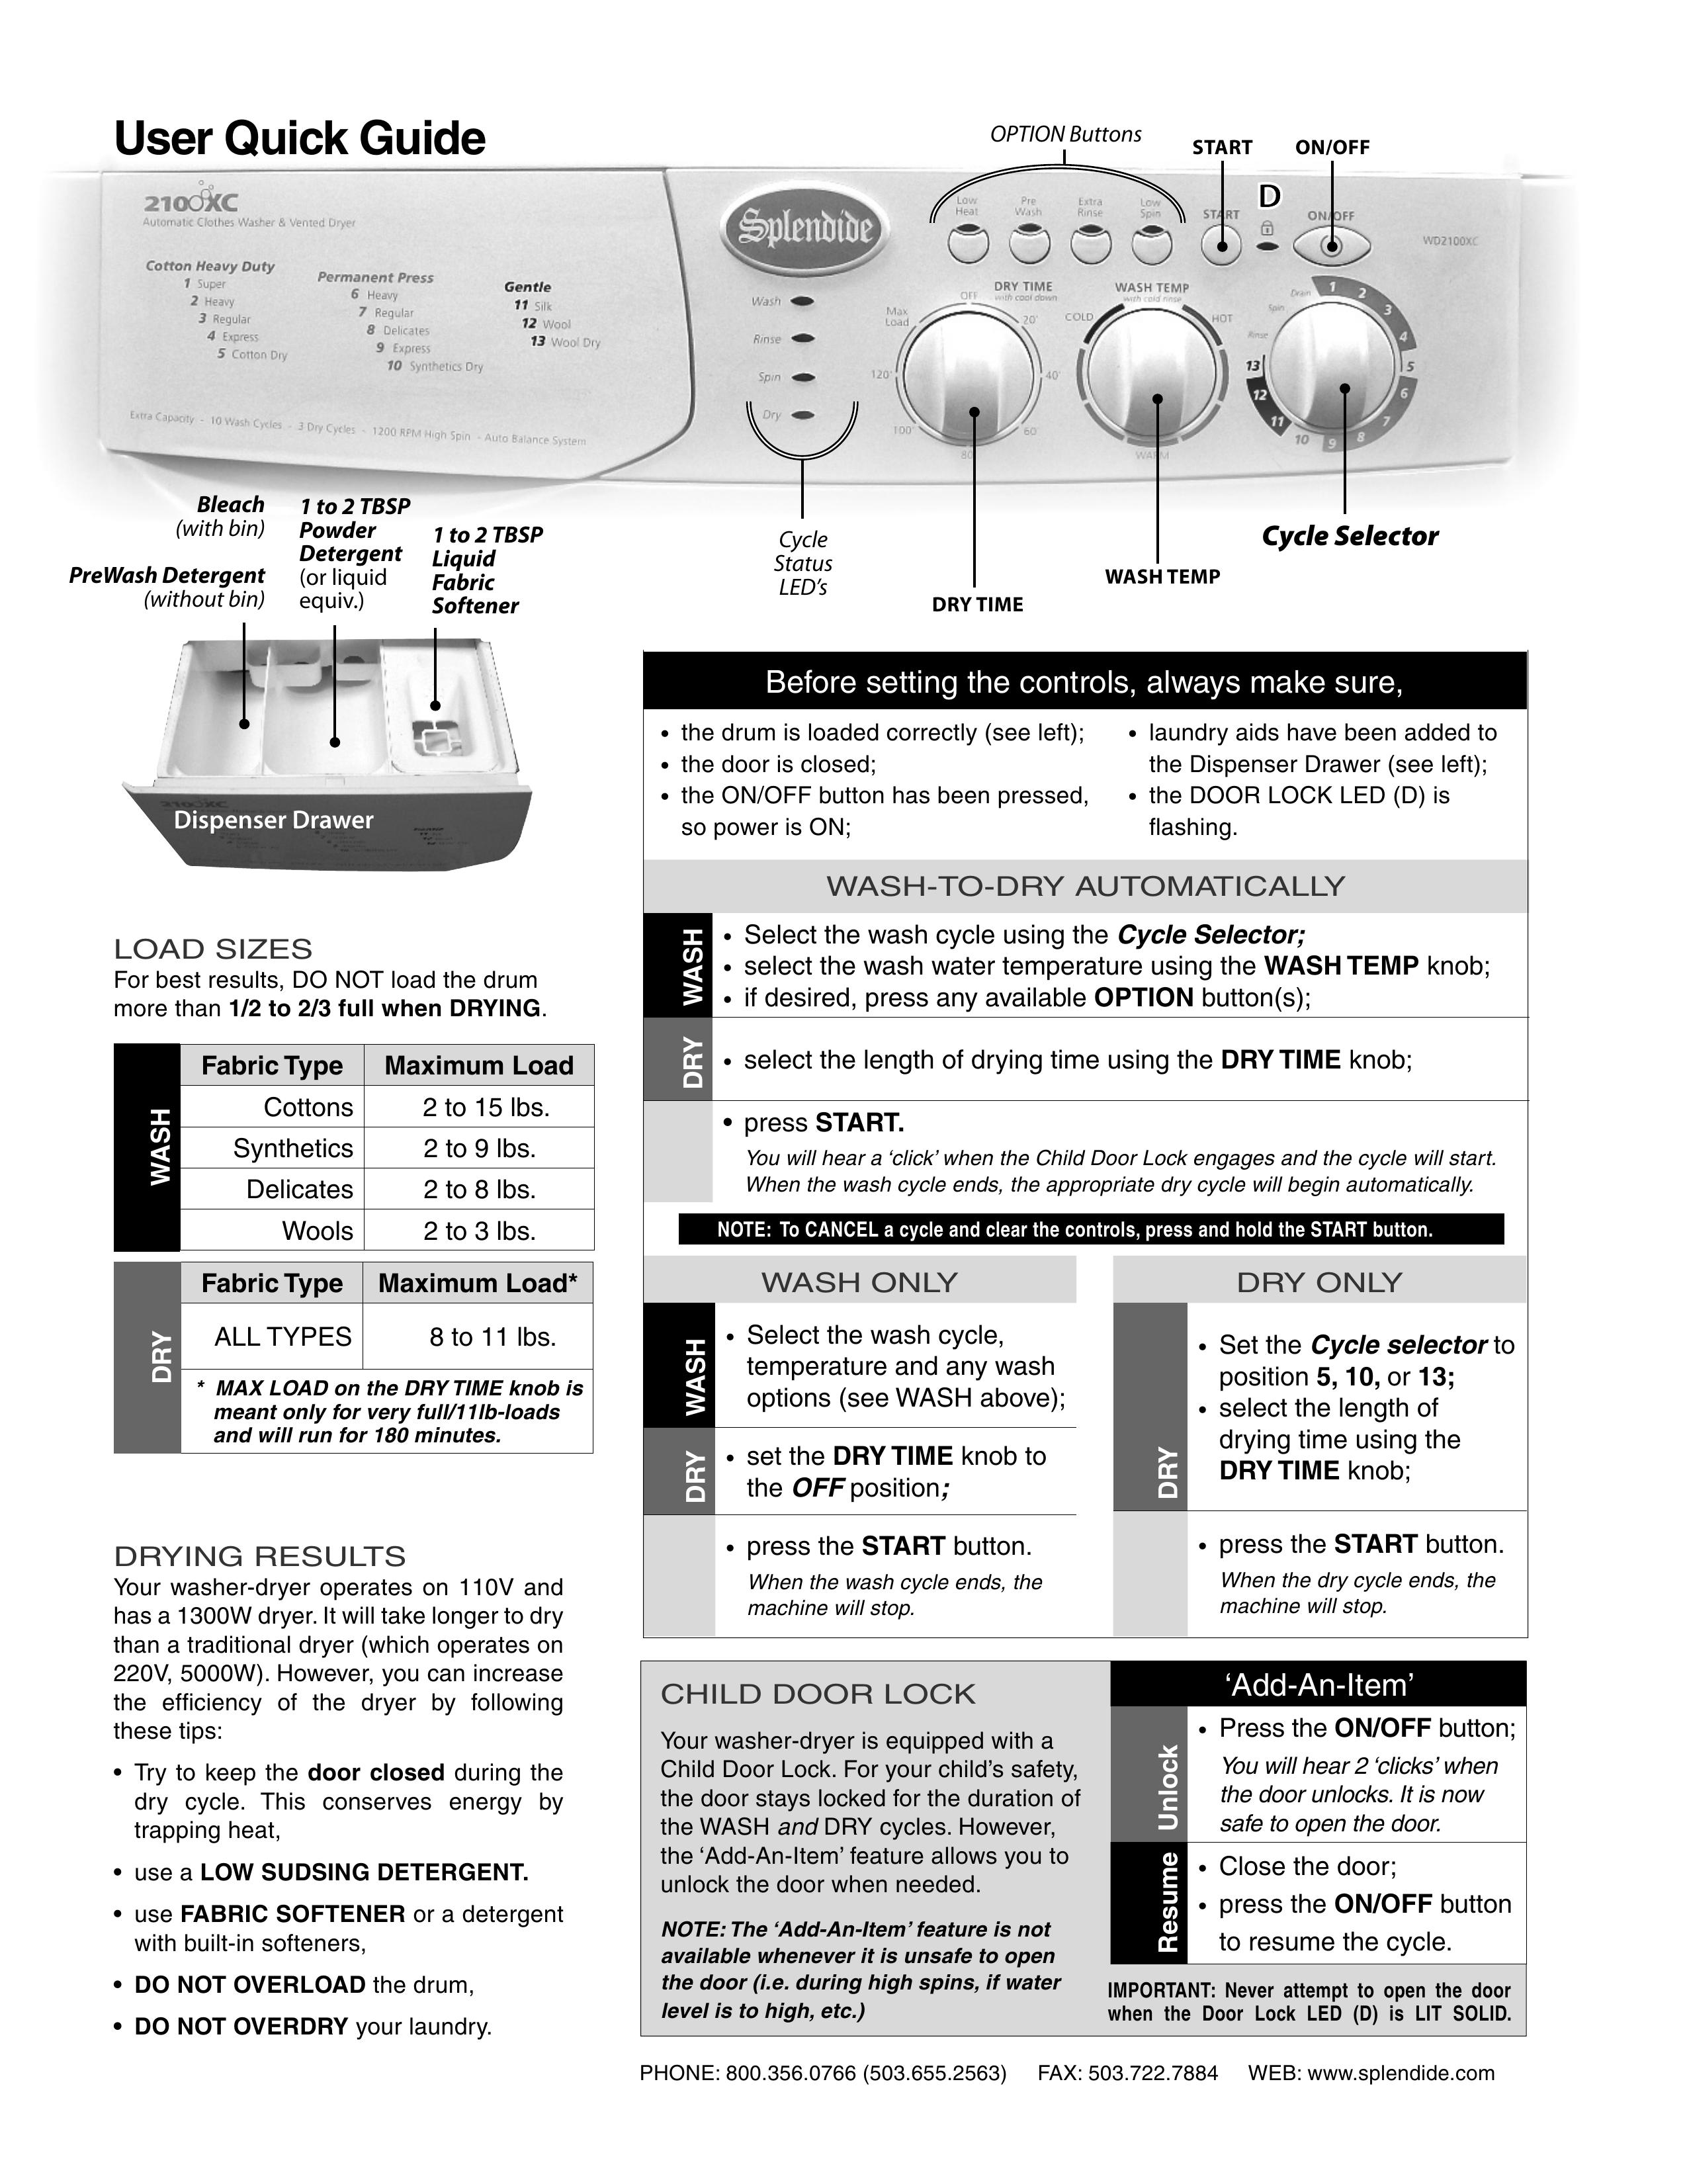 Splendide 210 XC Washer/Dryer User Manual